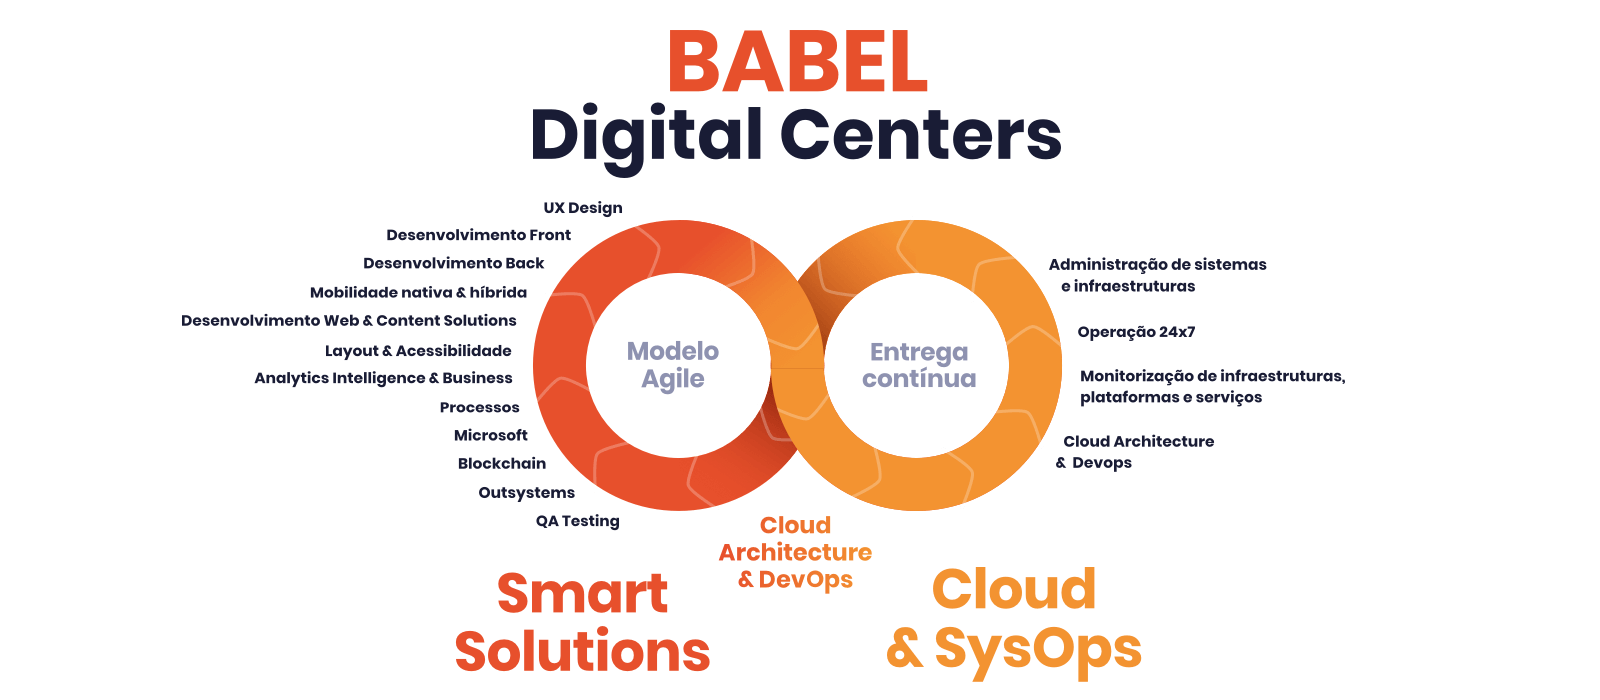 BABEL Digital Centers